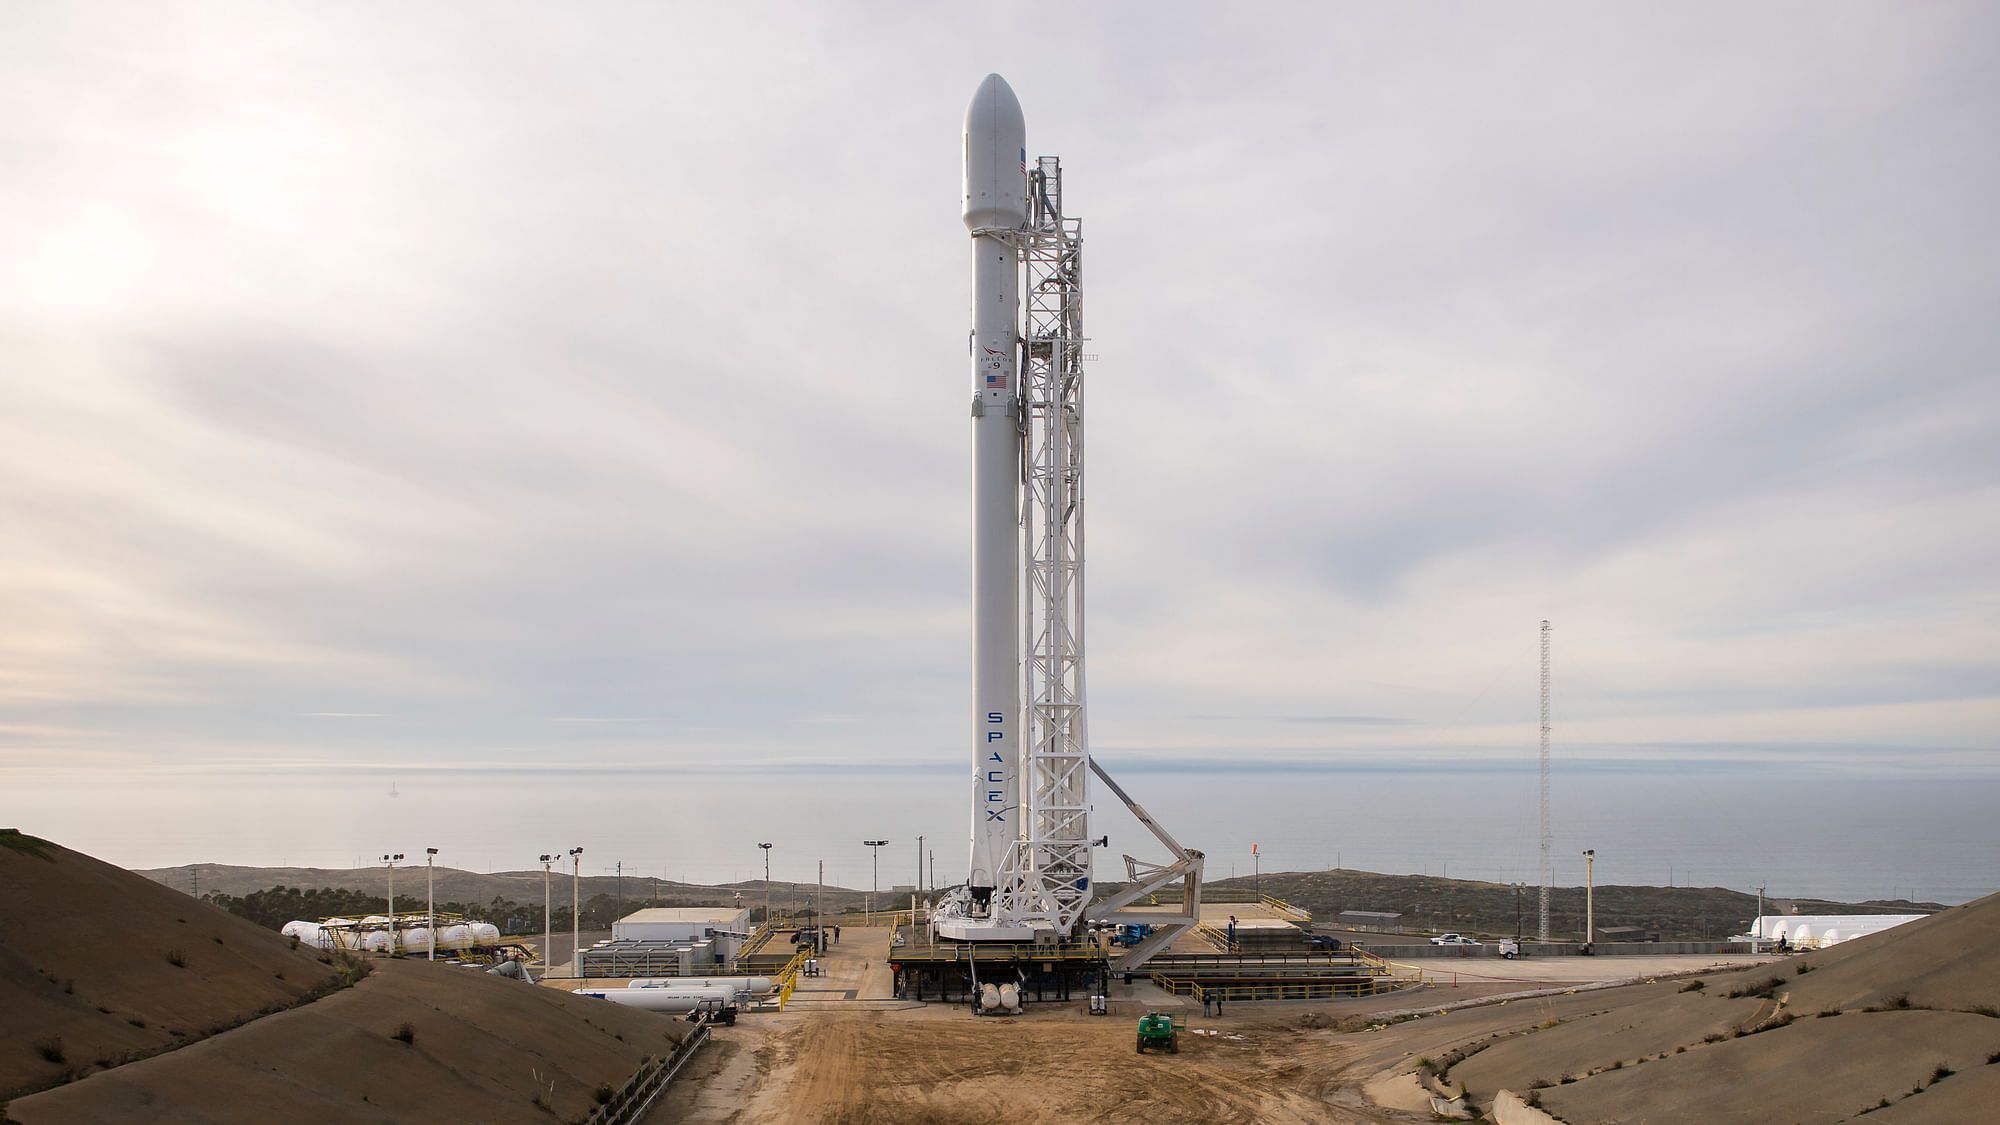 The SpaceX Falcon 9 rocket. (Photo: AP)